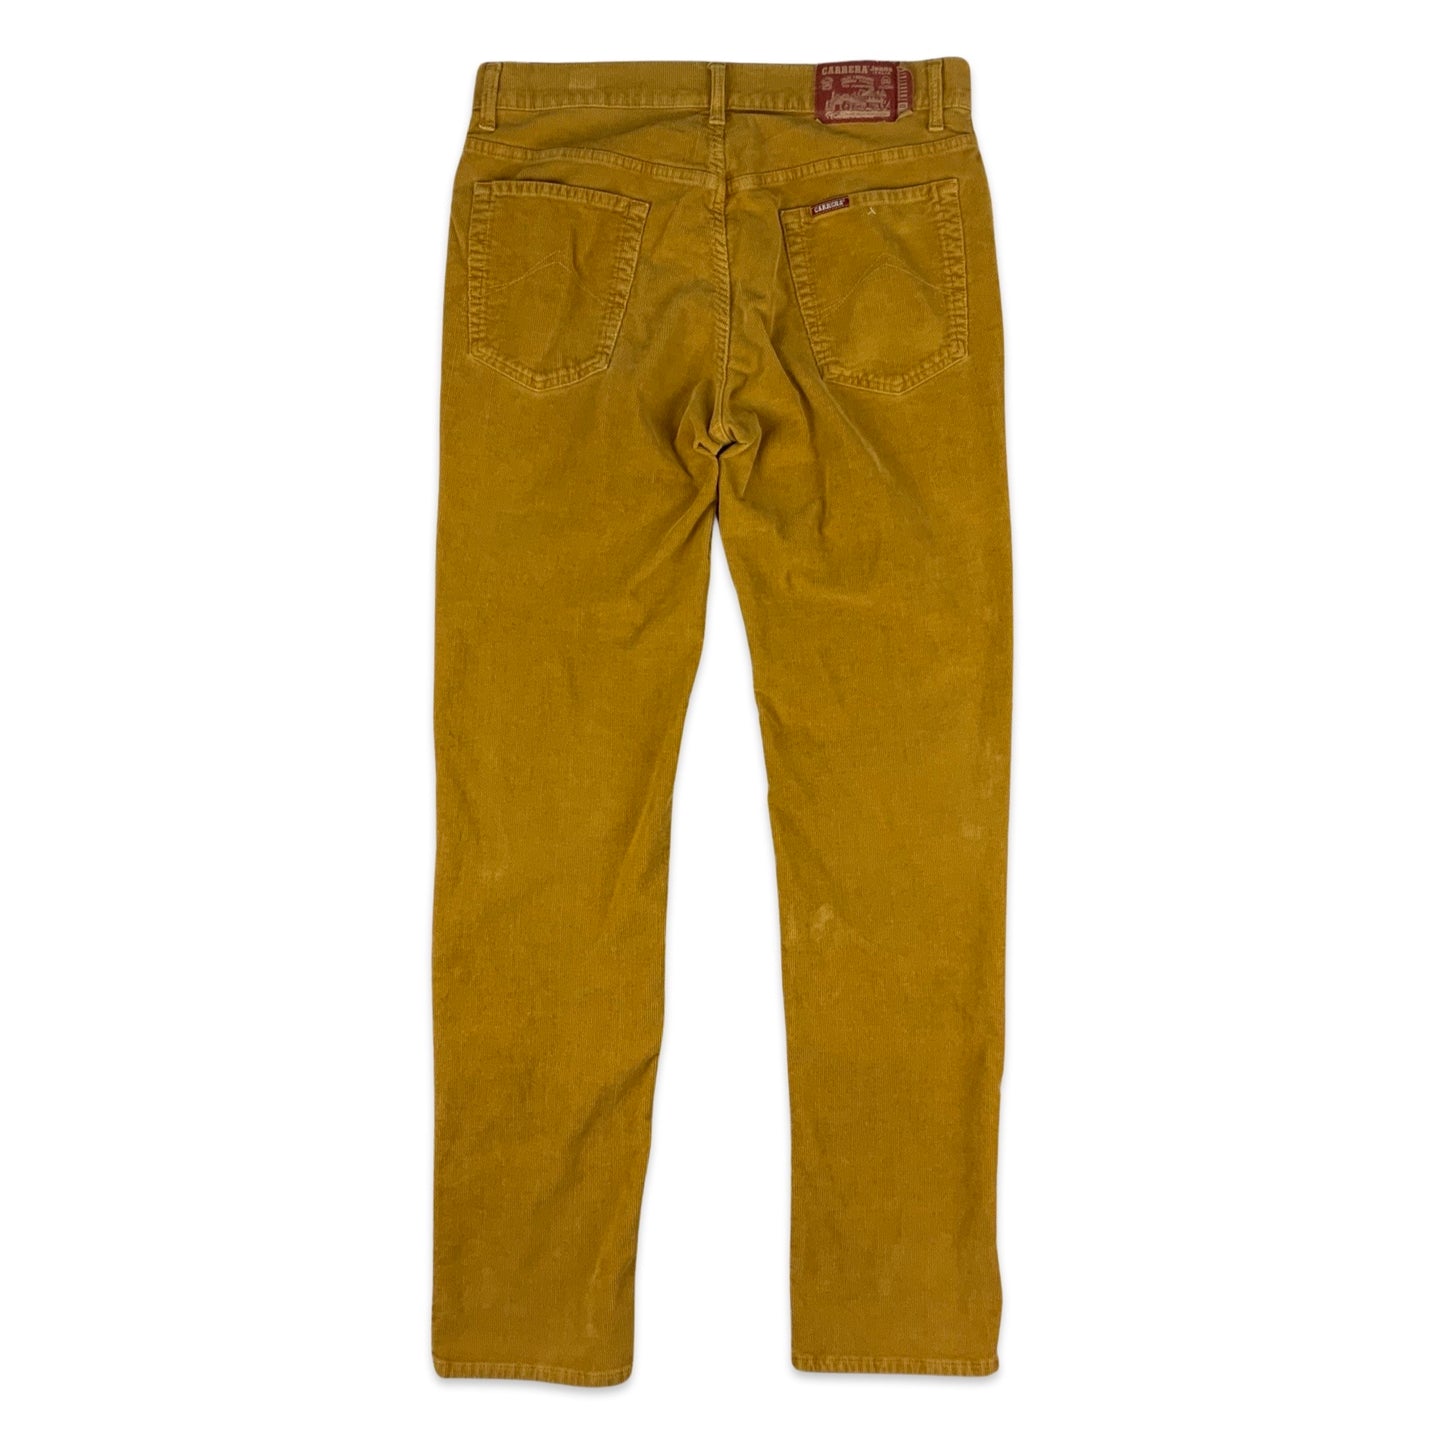 Vintage Yellow Corduroy Trousers 35W 34L